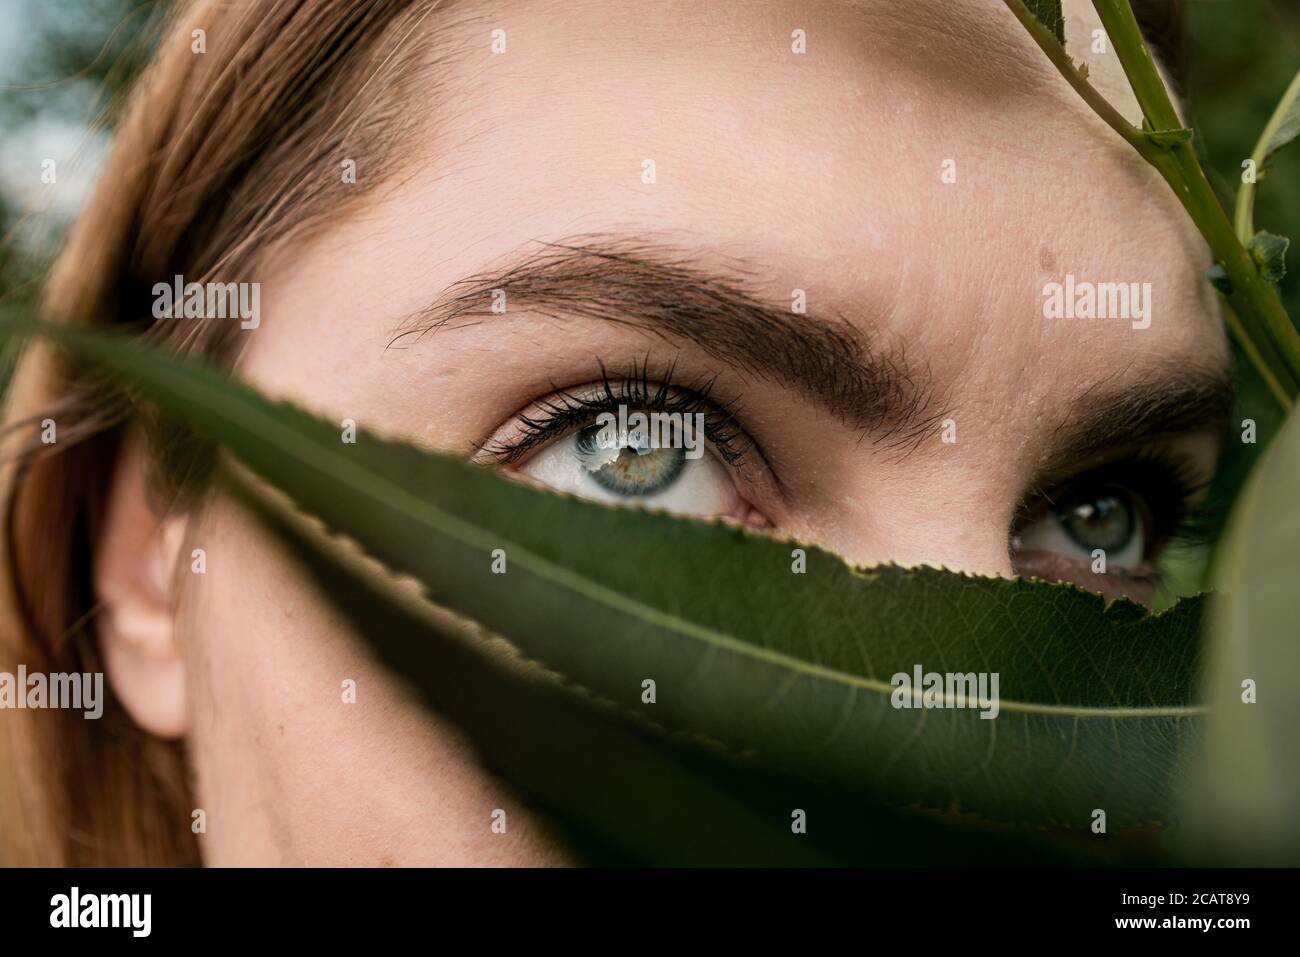 femme yeux couverts de feuille dans la nature concept de masque covid-19 Banque D'Images